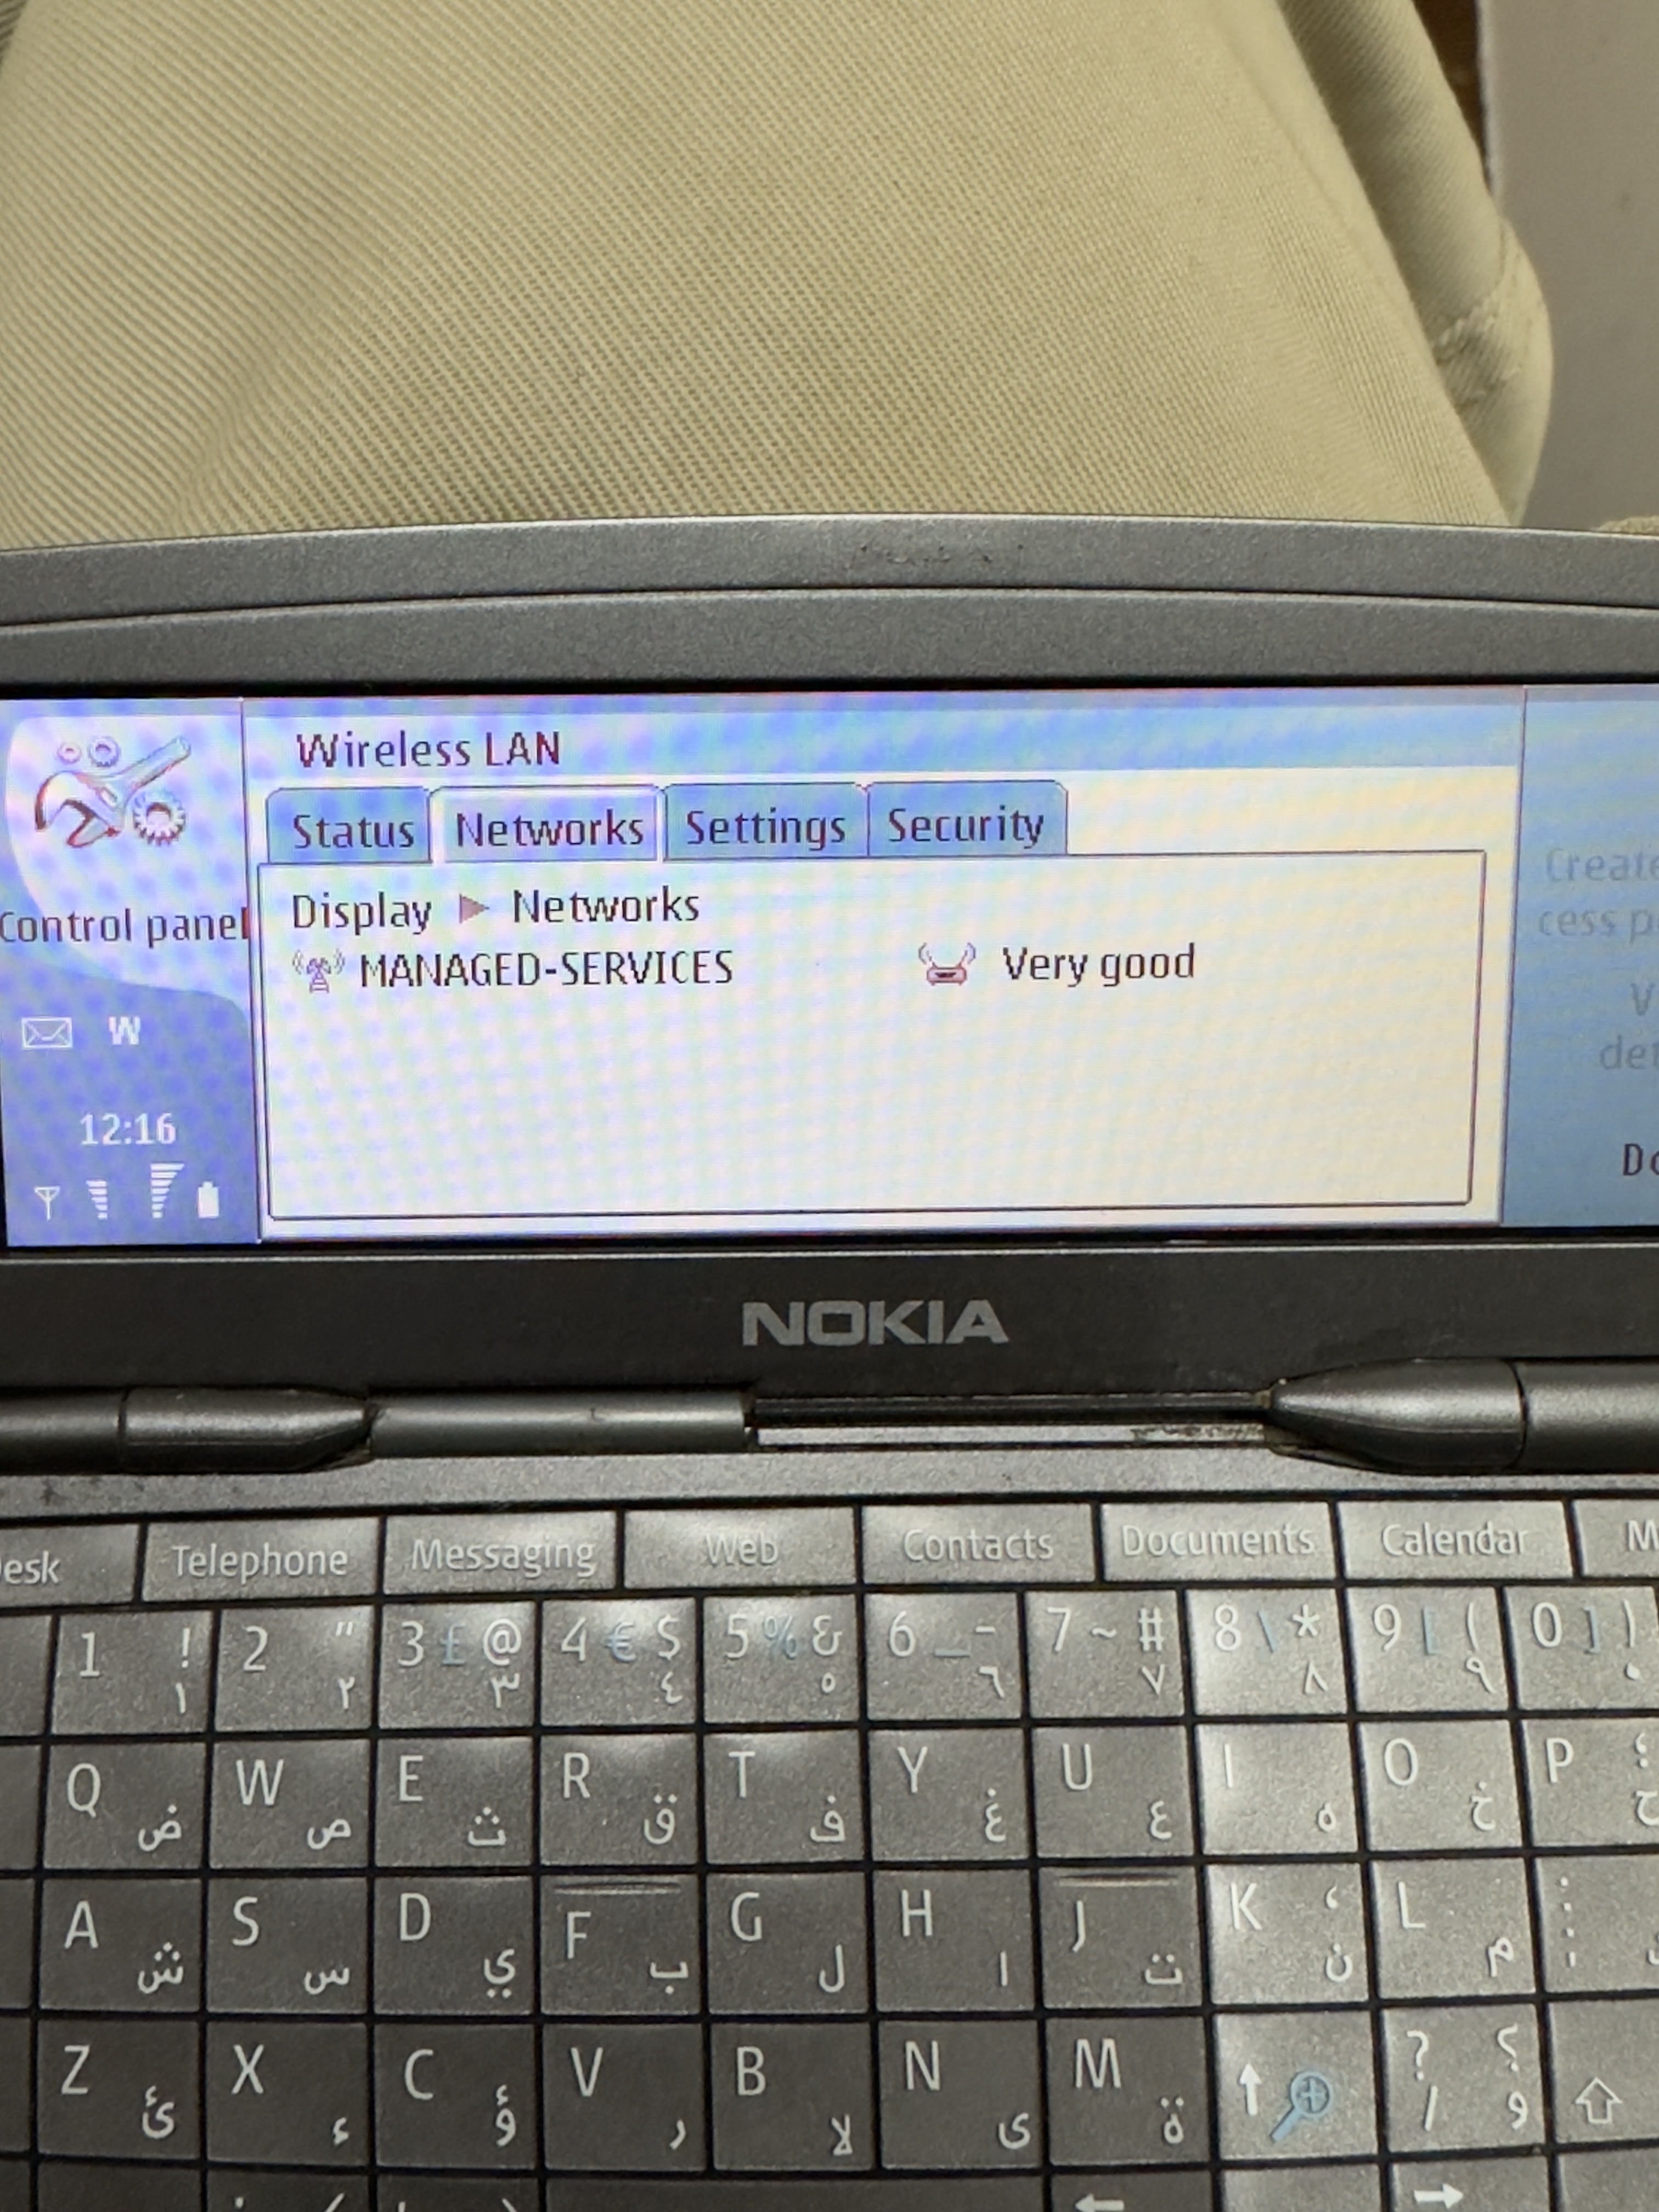 Nokia 9300i communicator